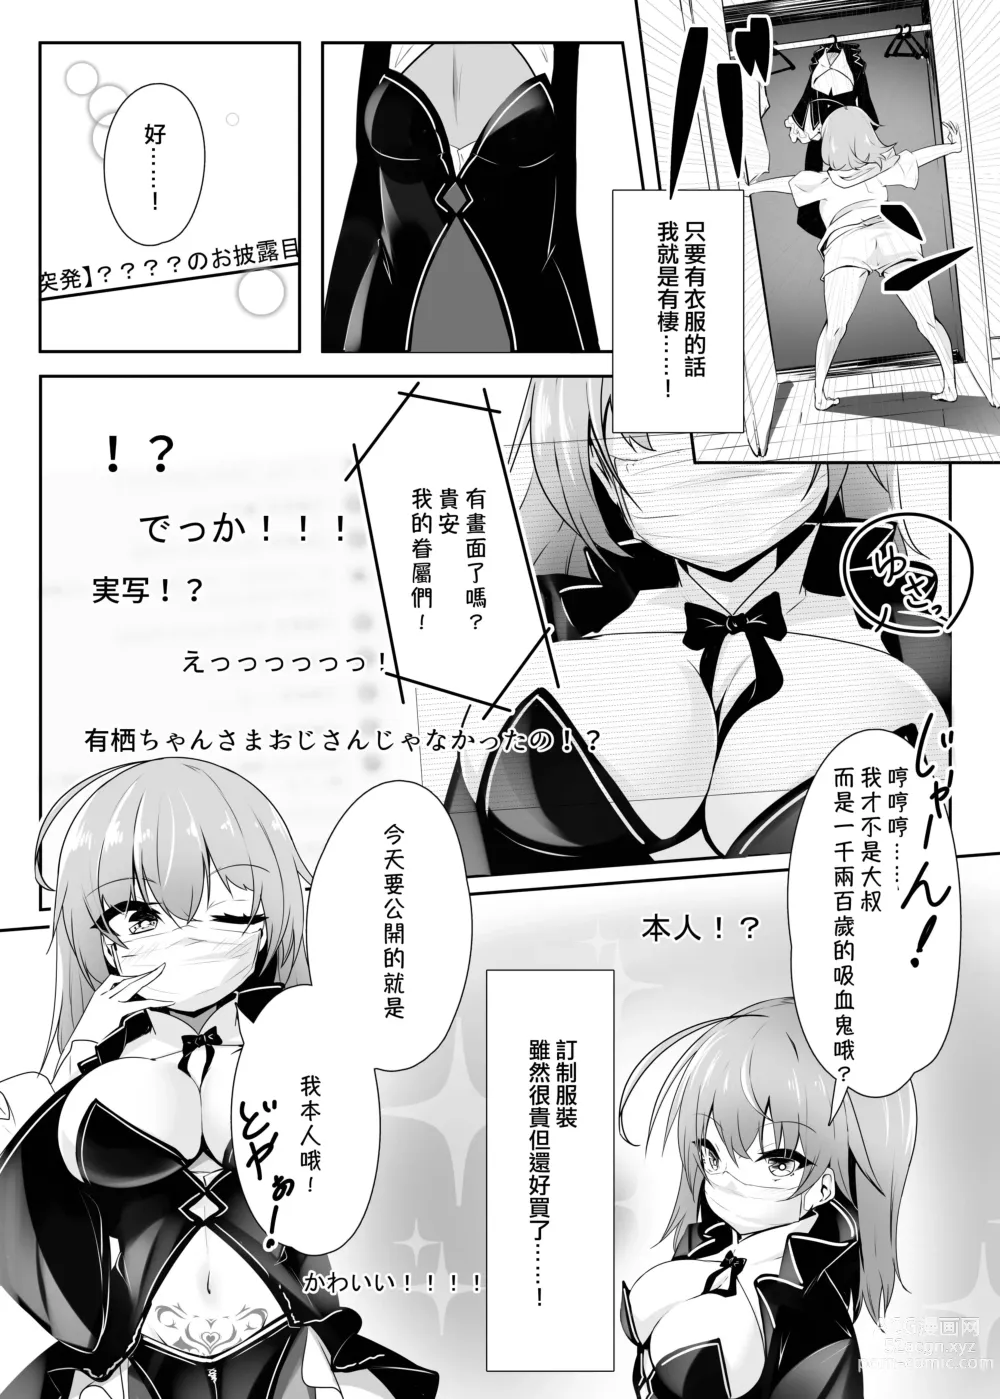 Page 5 of doujinshi Ribiniku Shita Vtuber ga Mesu ni Ochiru made